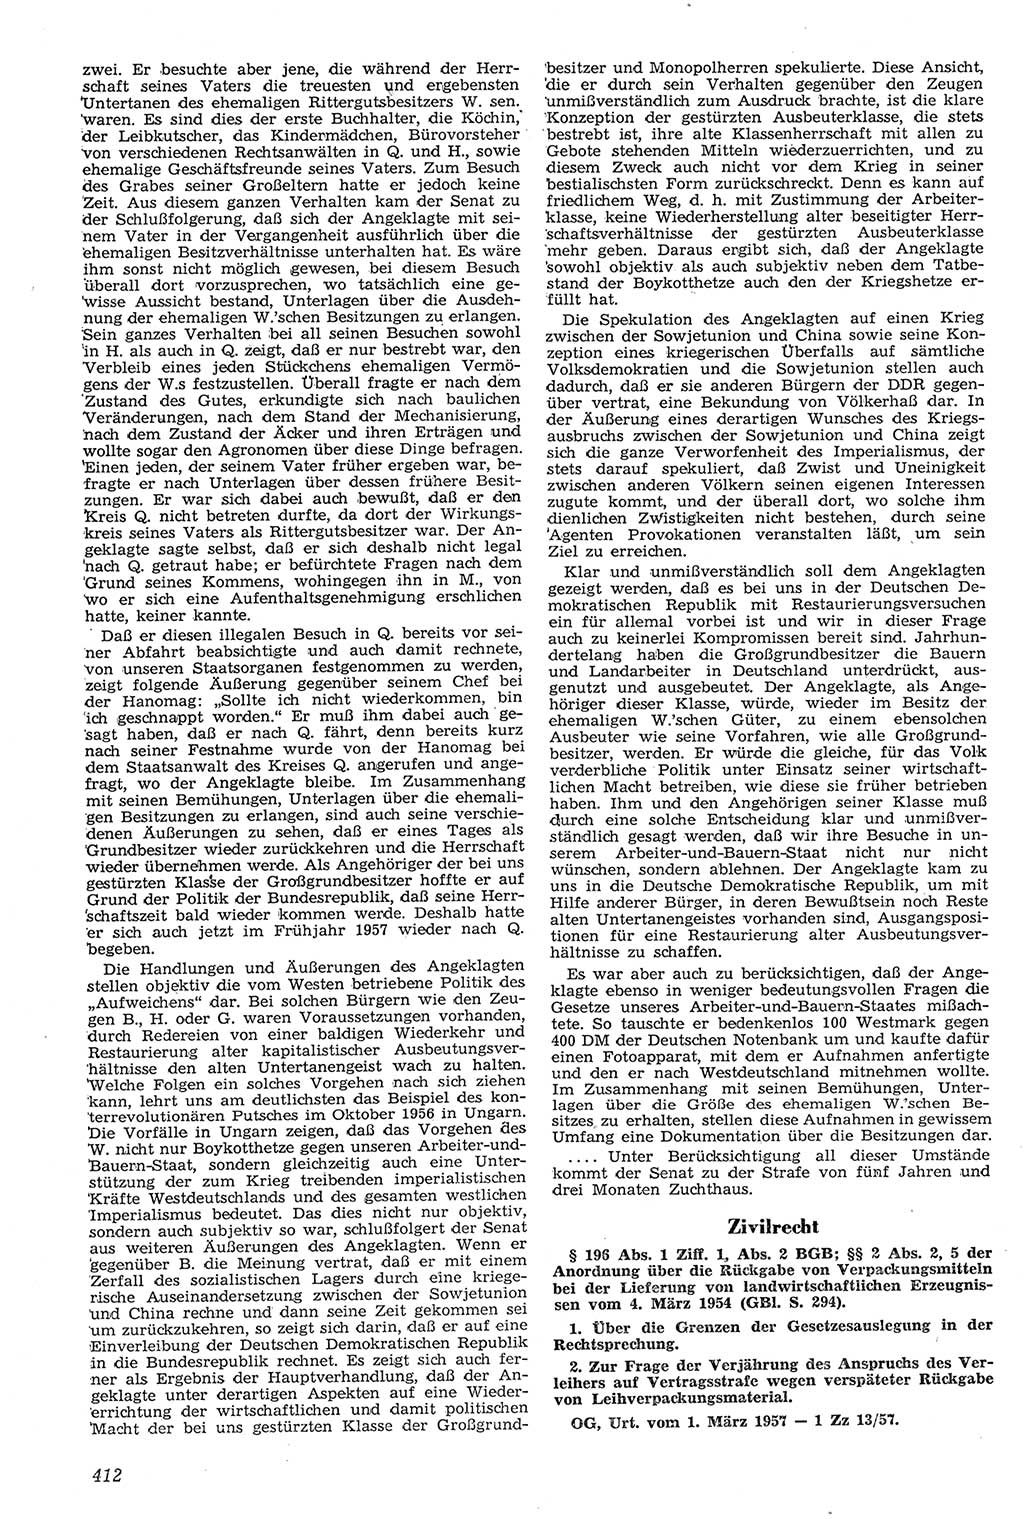 Neue Justiz (NJ), Zeitschrift für Recht und Rechtswissenschaft [Deutsche Demokratische Republik (DDR)], 11. Jahrgang 1957, Seite 412 (NJ DDR 1957, S. 412)